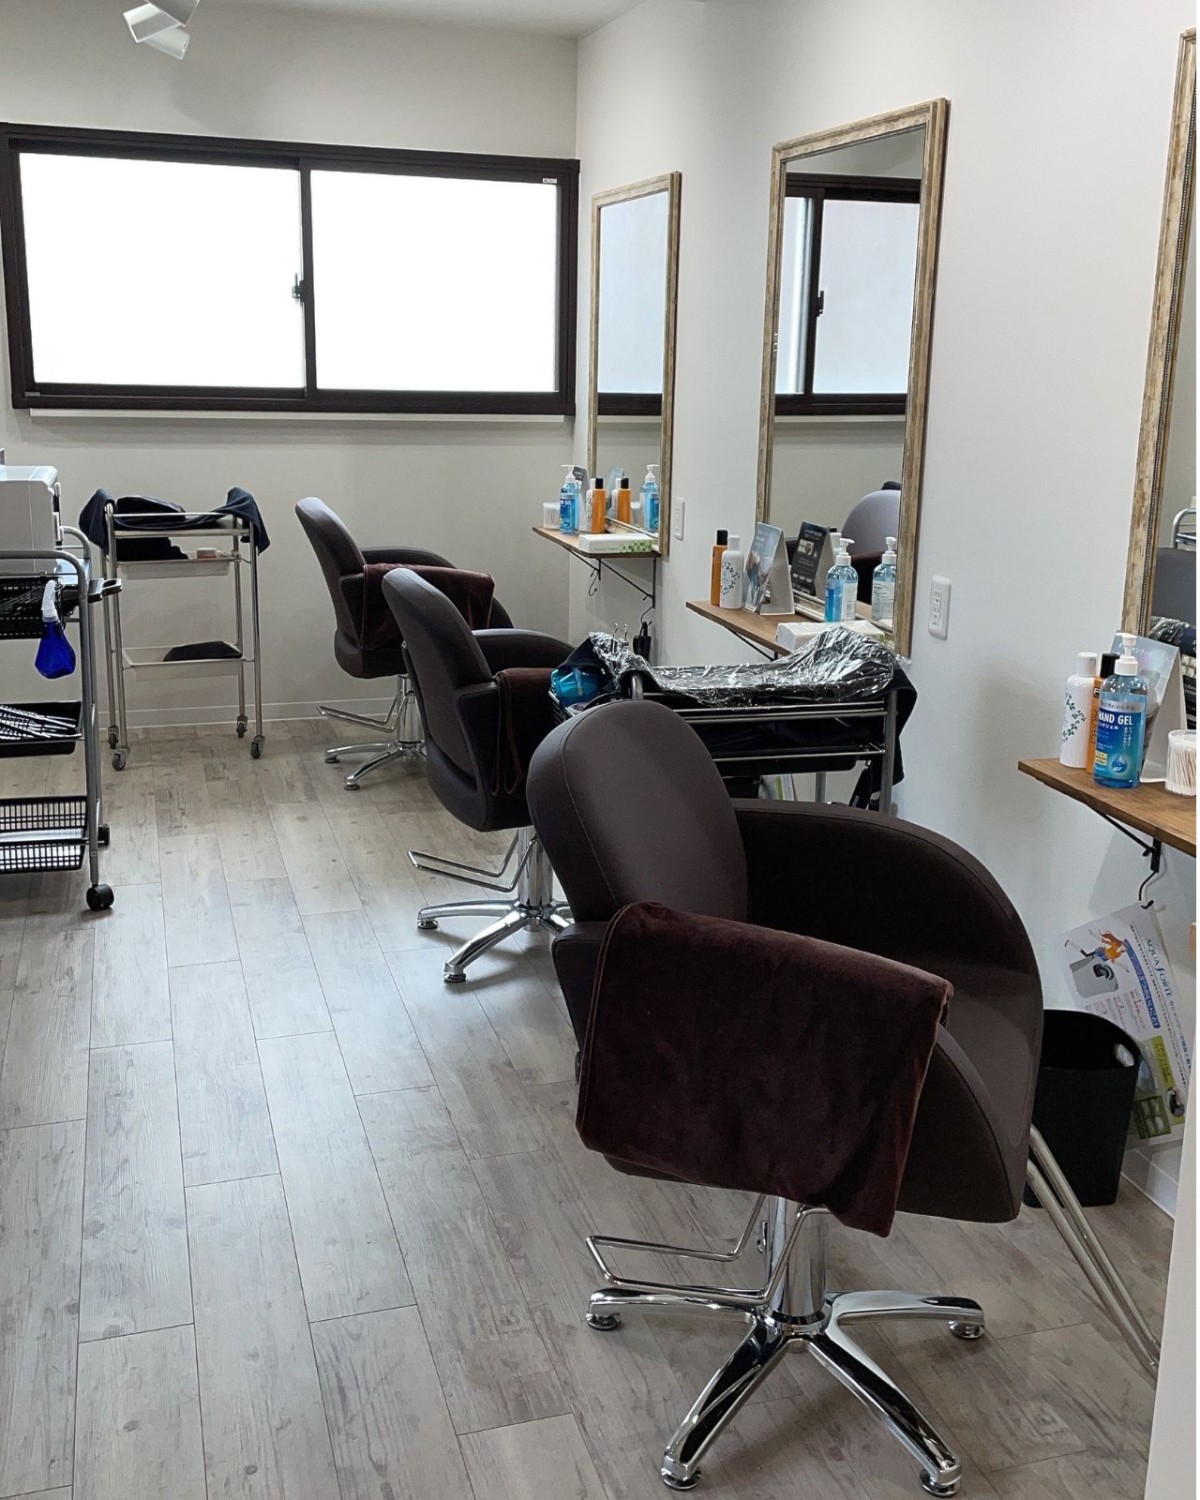 鳥取県米子市にオープンしたヘアカラー専門サロン『髪染屋』の店内の様子